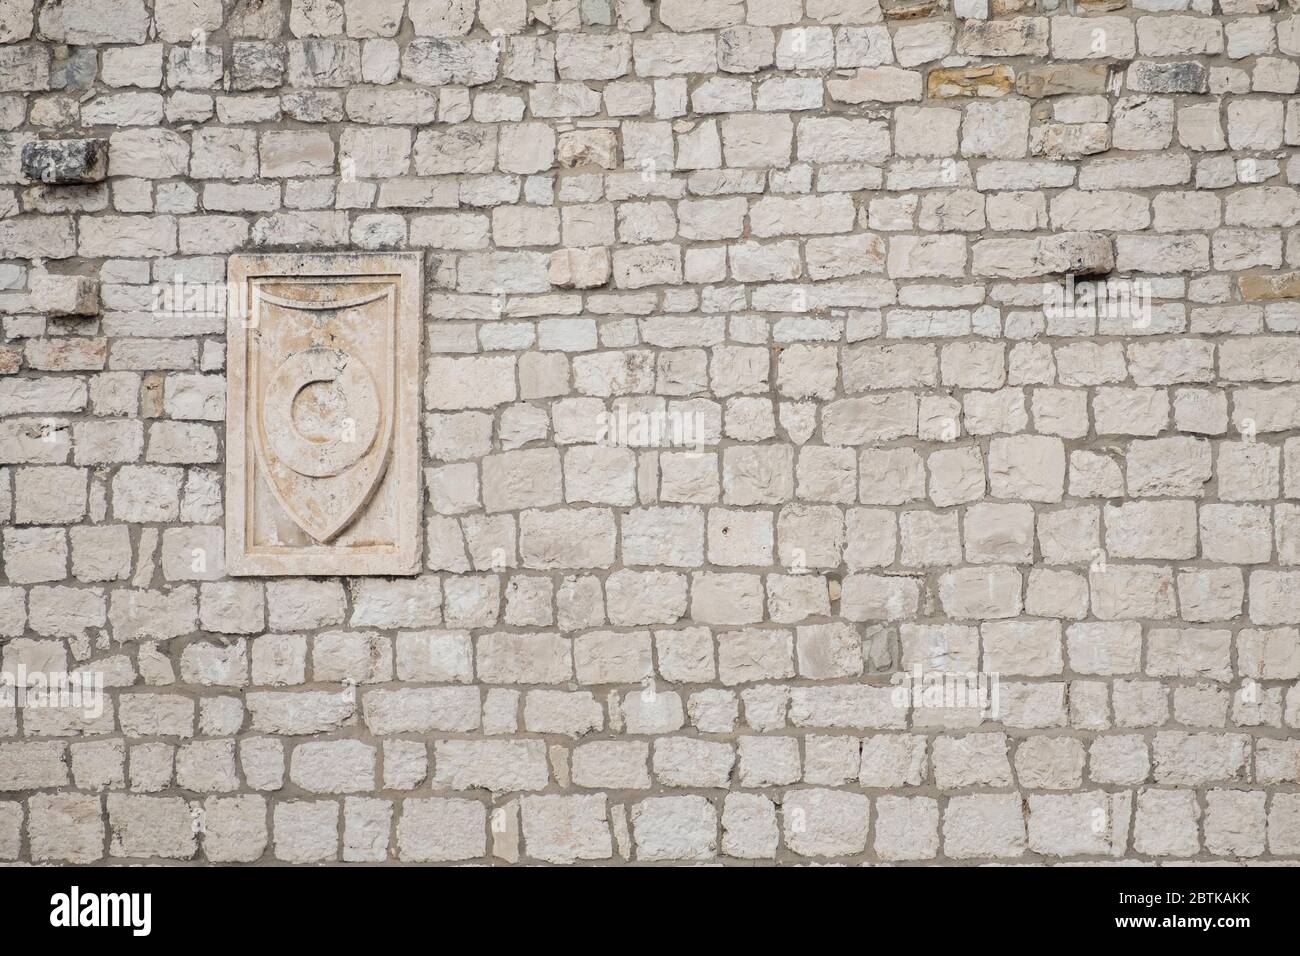 Architektonisches Detail einer alten Steinmauer mit mittelalterlichen Plaque-Schnitzereien, in der historischen Altstadt von Split, Kroatien Stockfoto